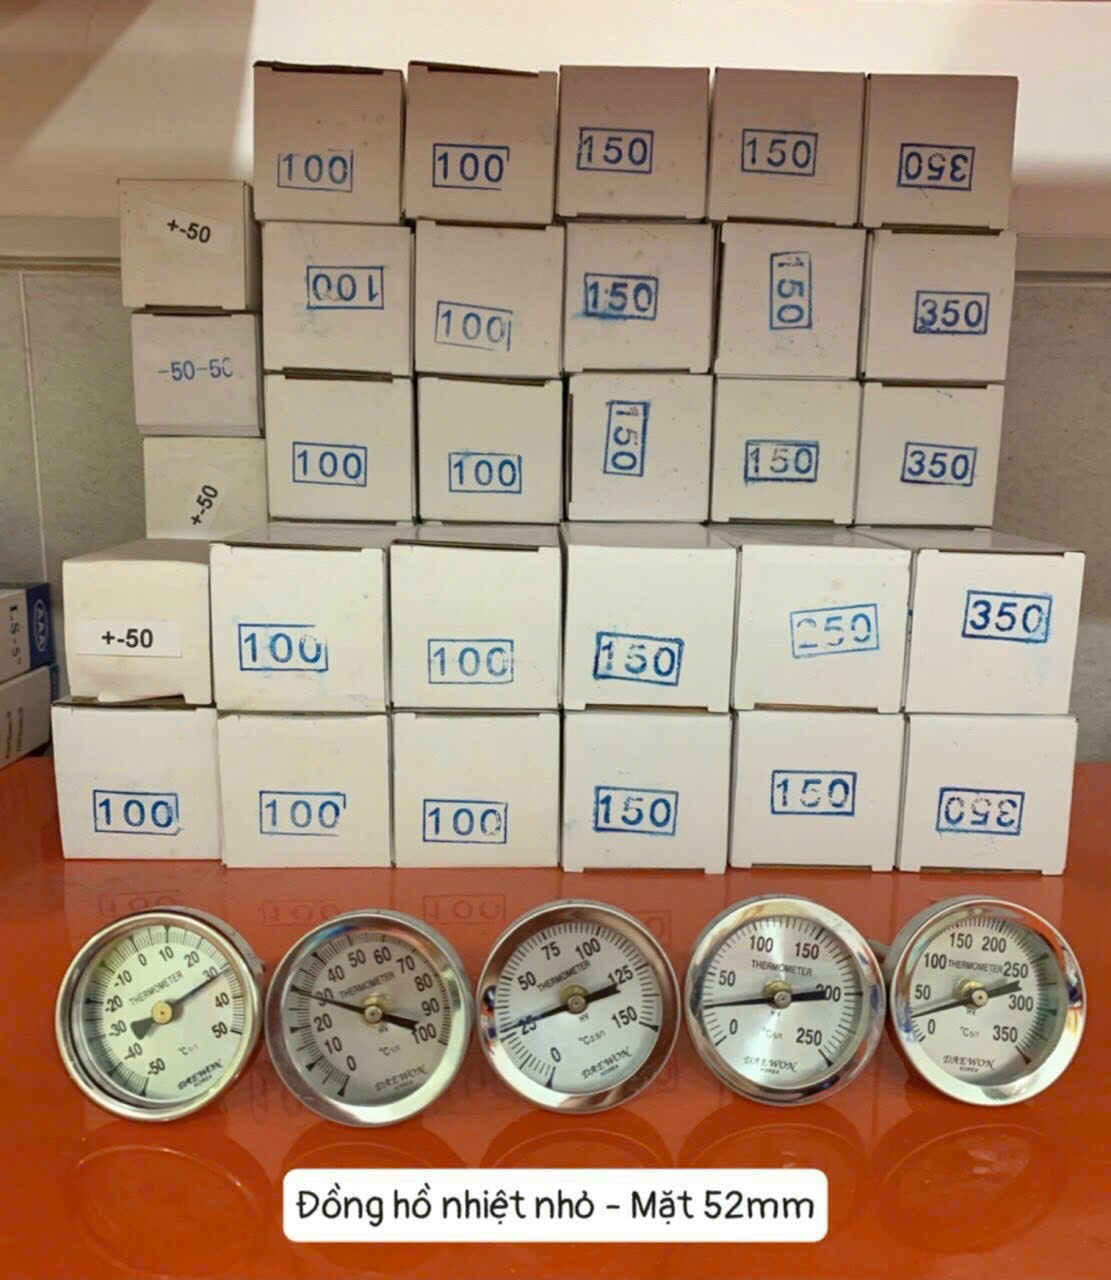 Đồng hồ đo nhiệt độ mặt 52mm đầy đủ các dải đo khác nhau